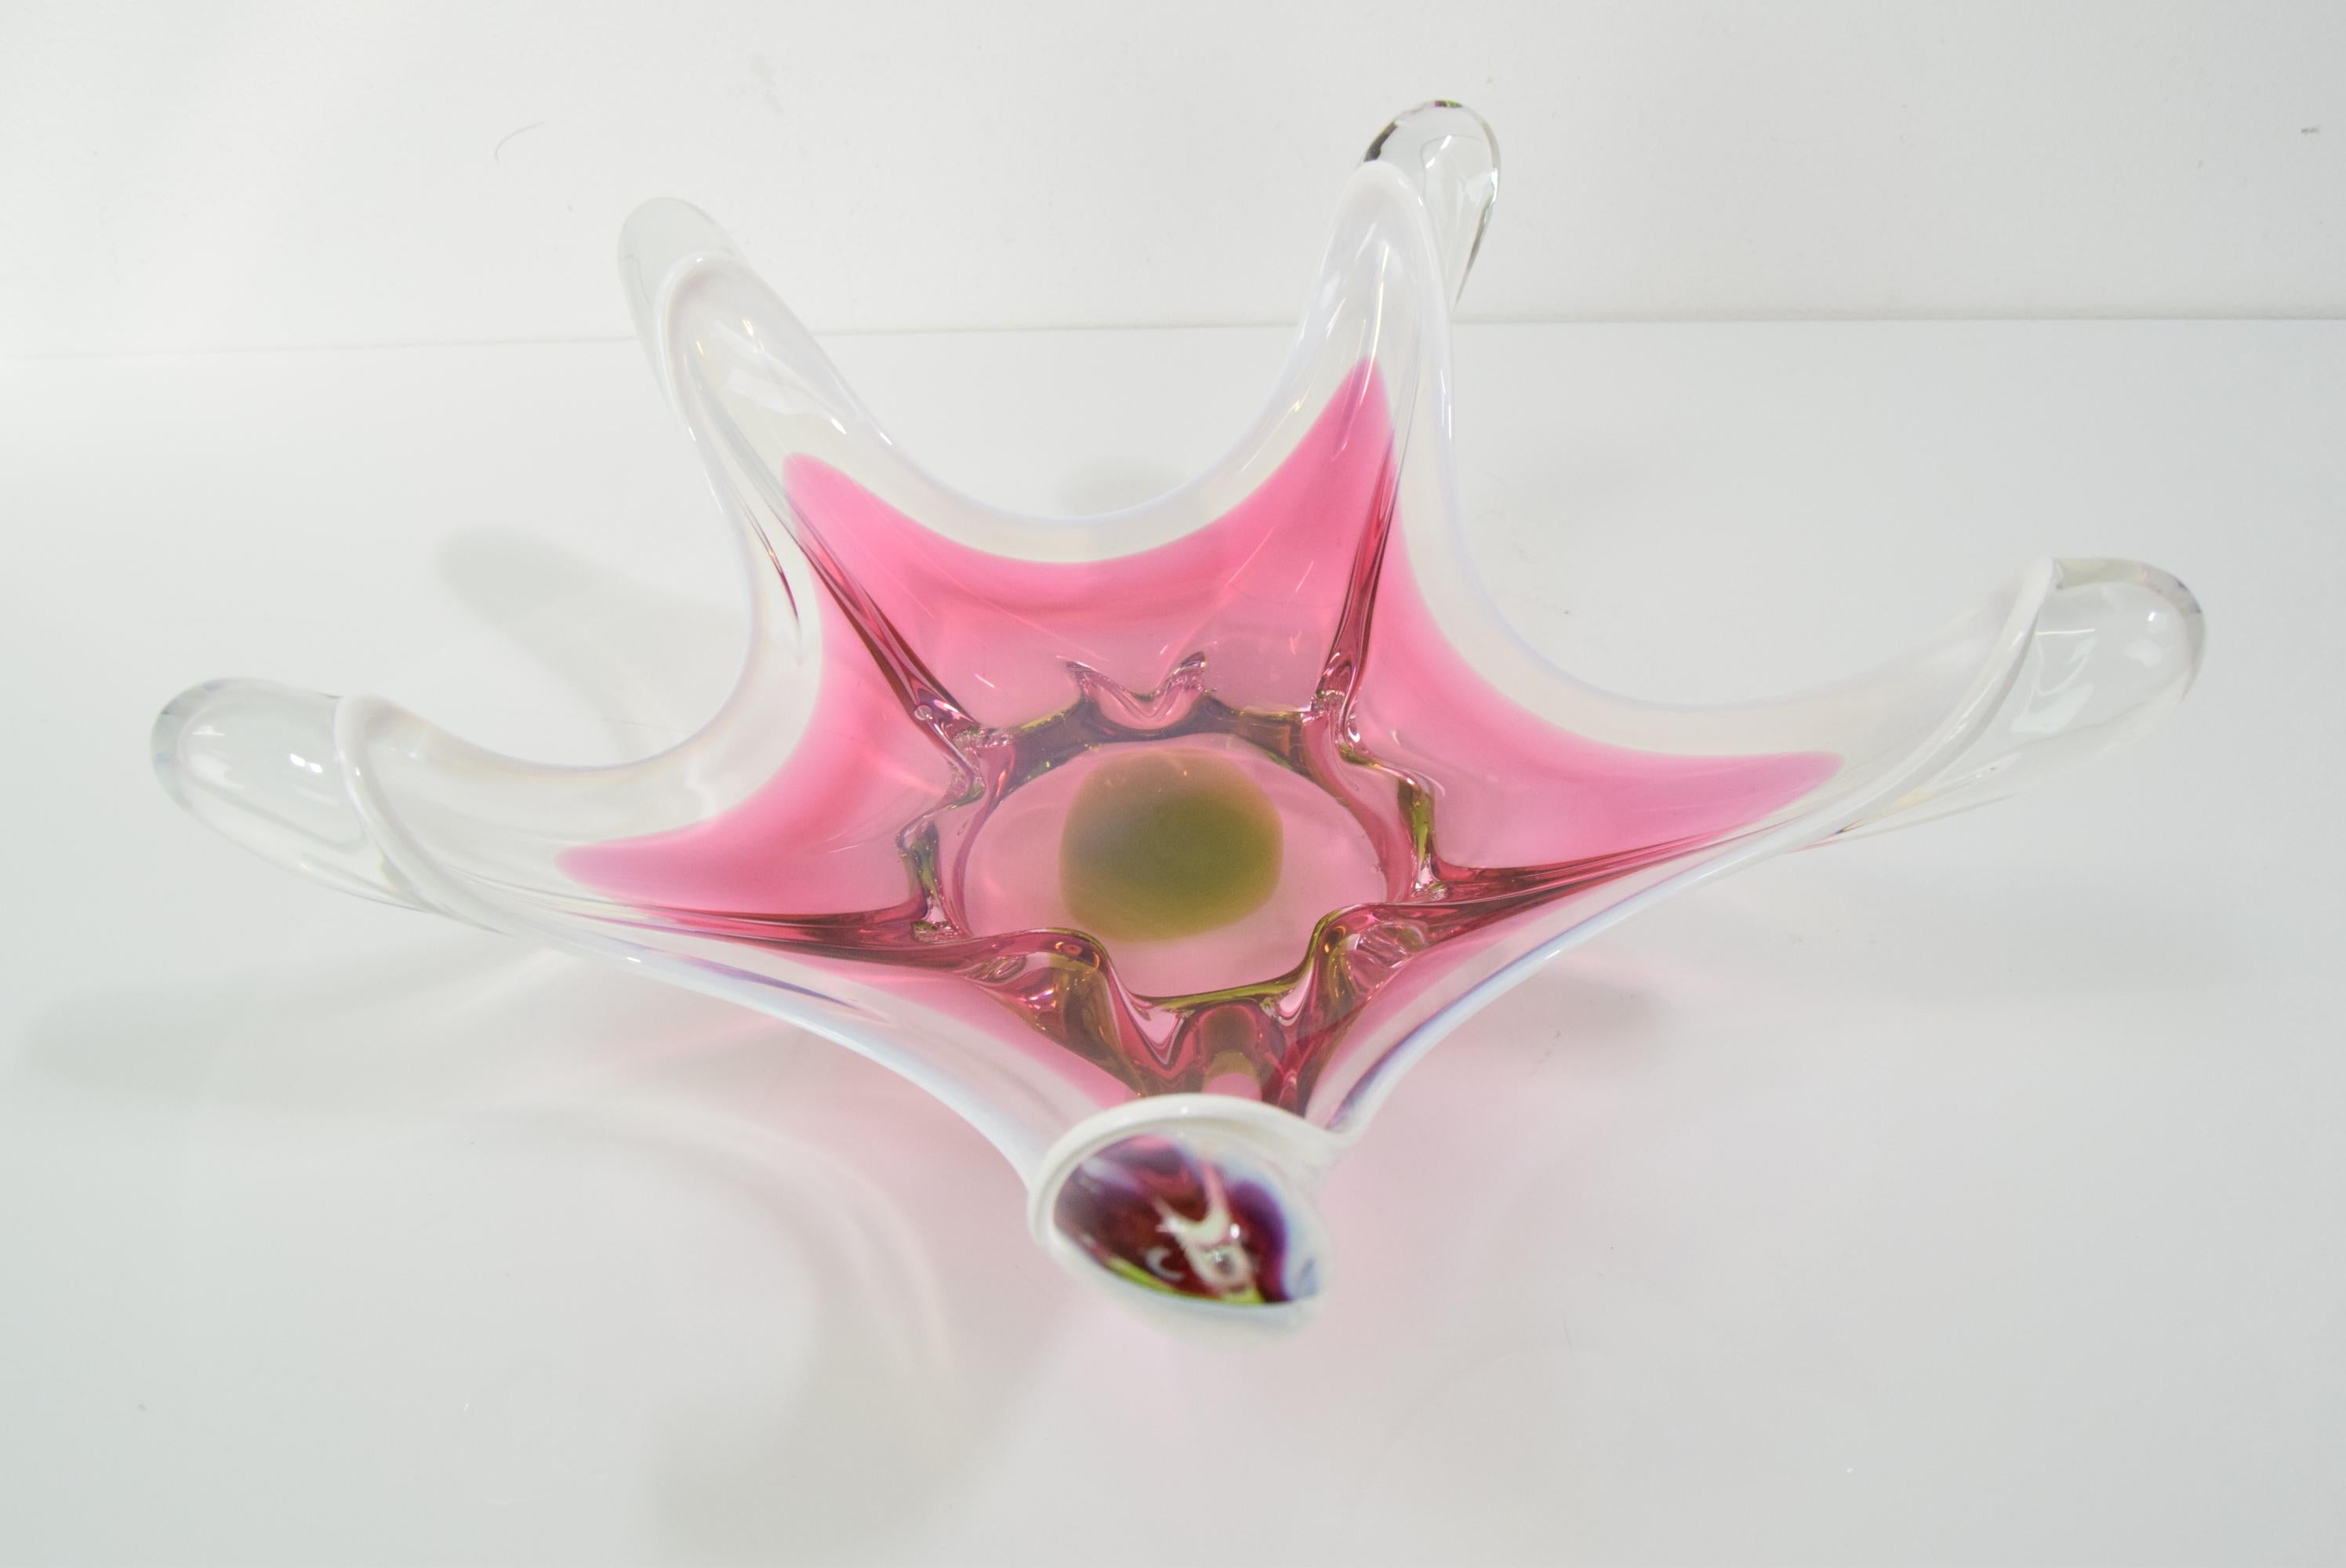 Czech Art Glass Bowl by Josef Hospodka for Chribska Glasswork, 1960's For Sale 4